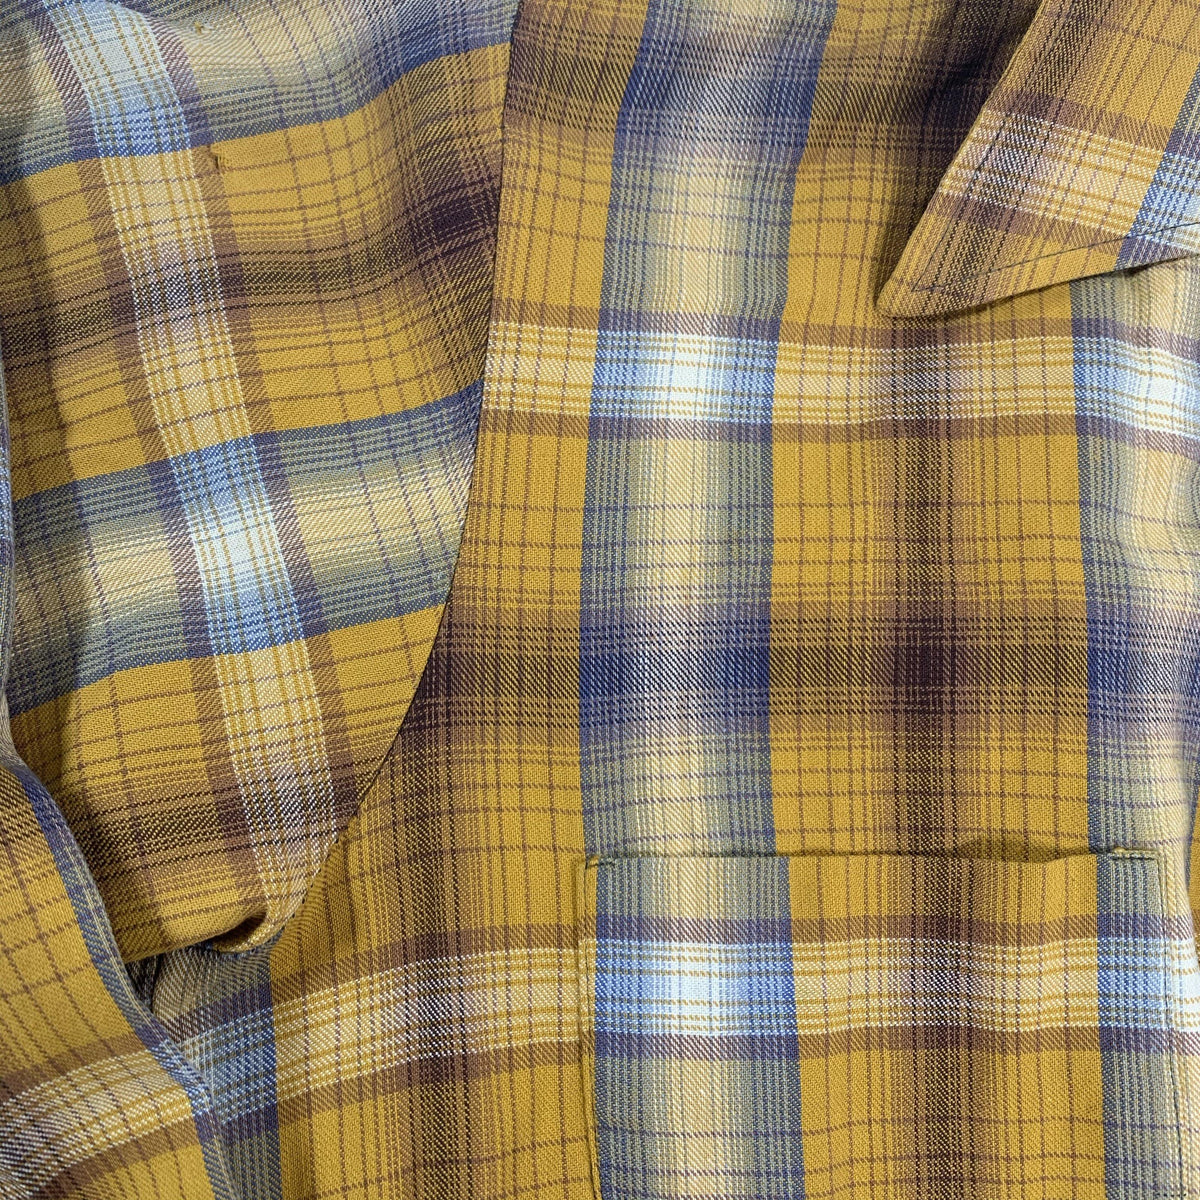 Vintage Macphergus “Loop Collar” Flannel Shirt - jointcustodydc